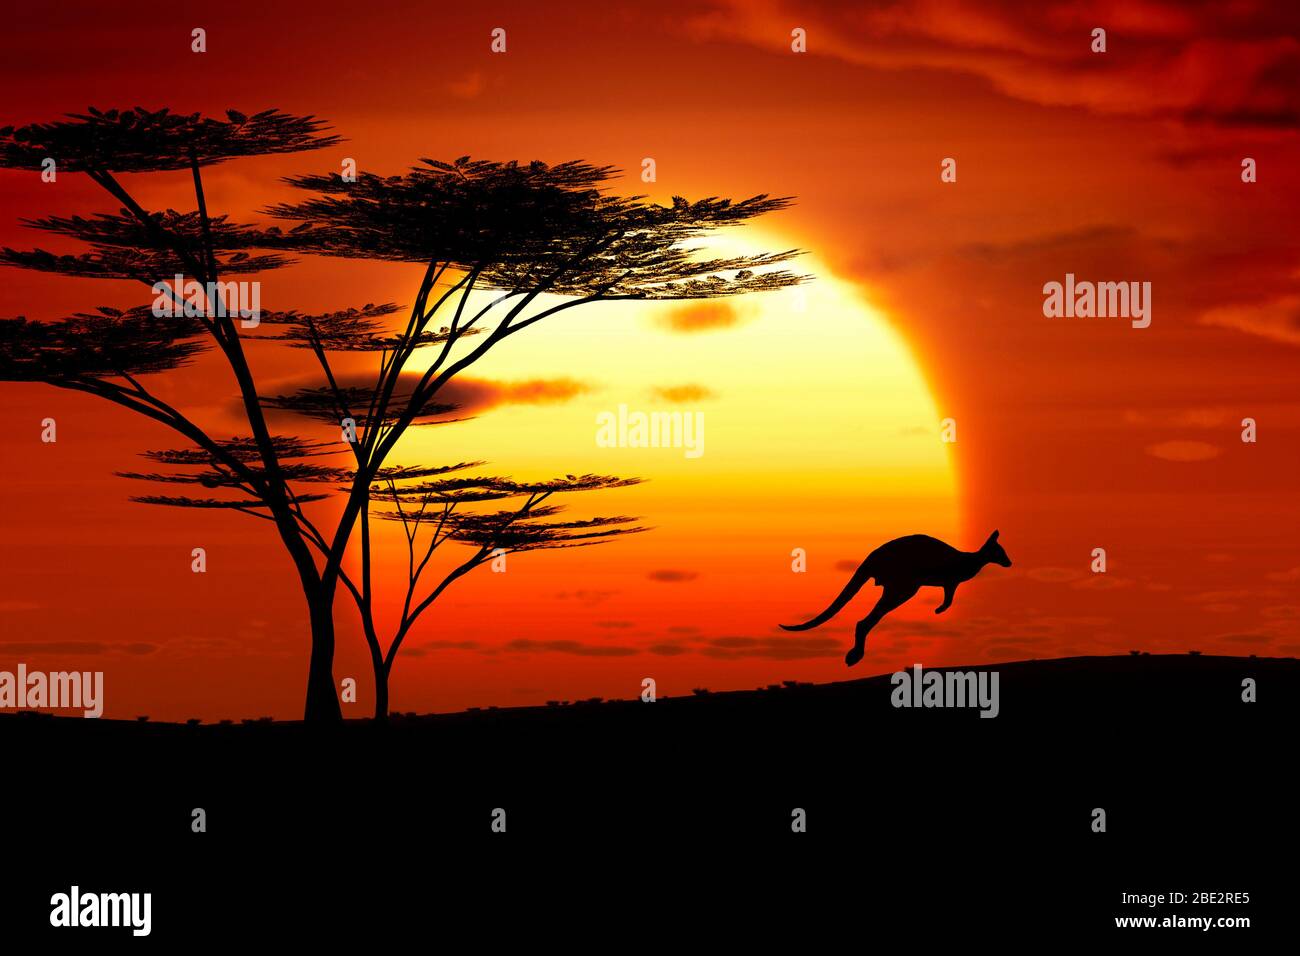 Die Silhouette eines Kaengurus vor einem Sonnenuntergang Foto Stock